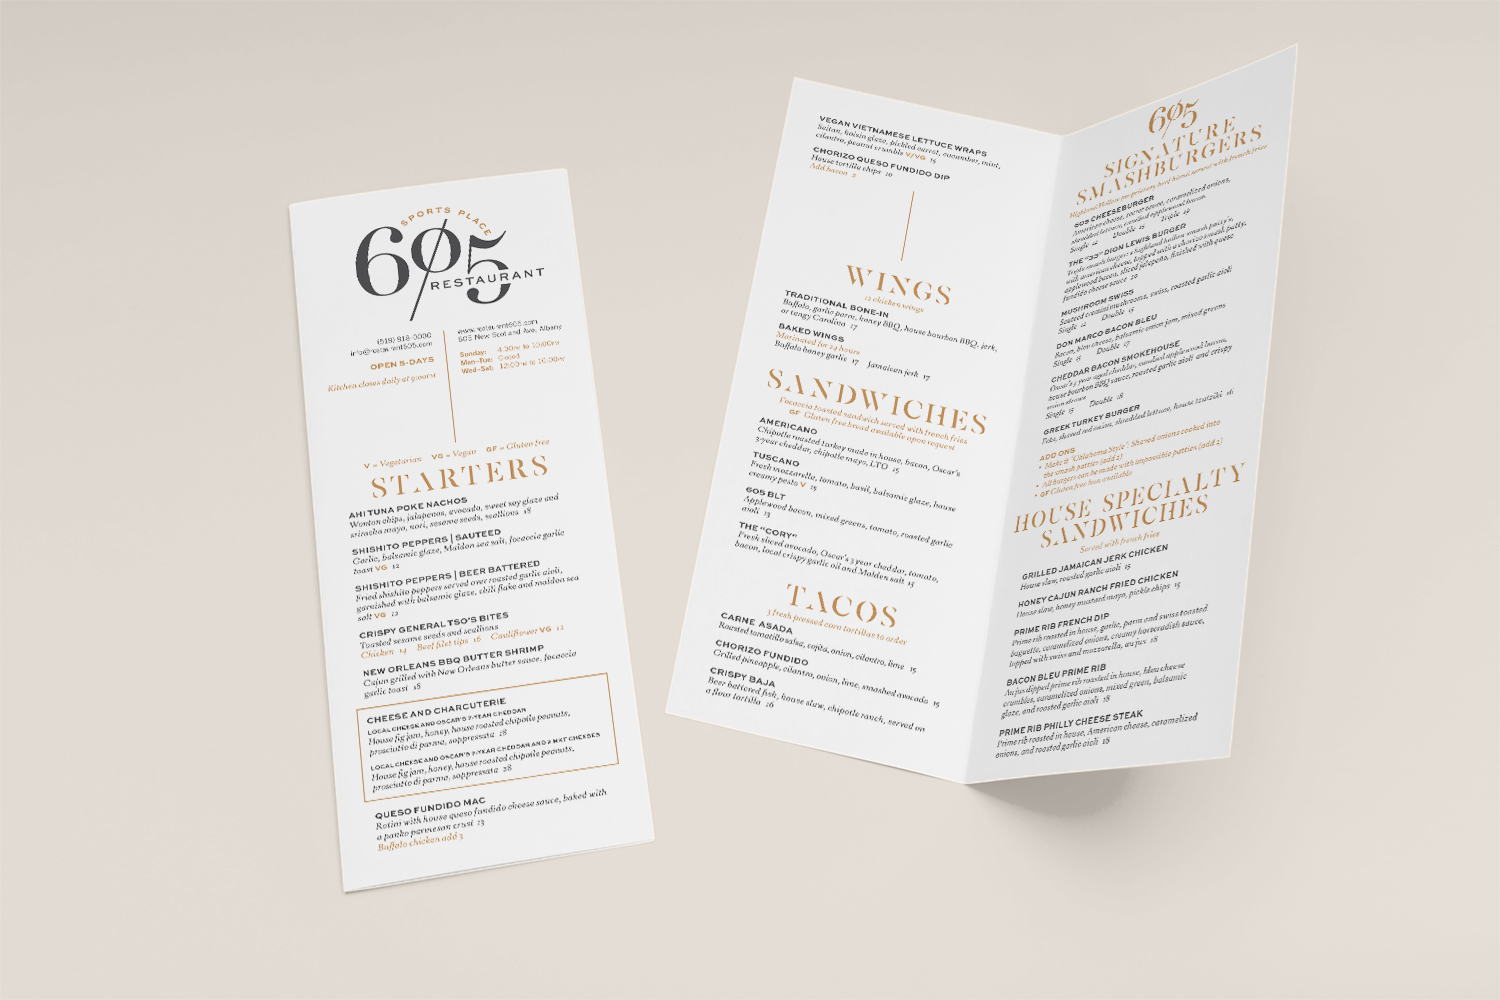 Mockup of Restaurant 605's print menu